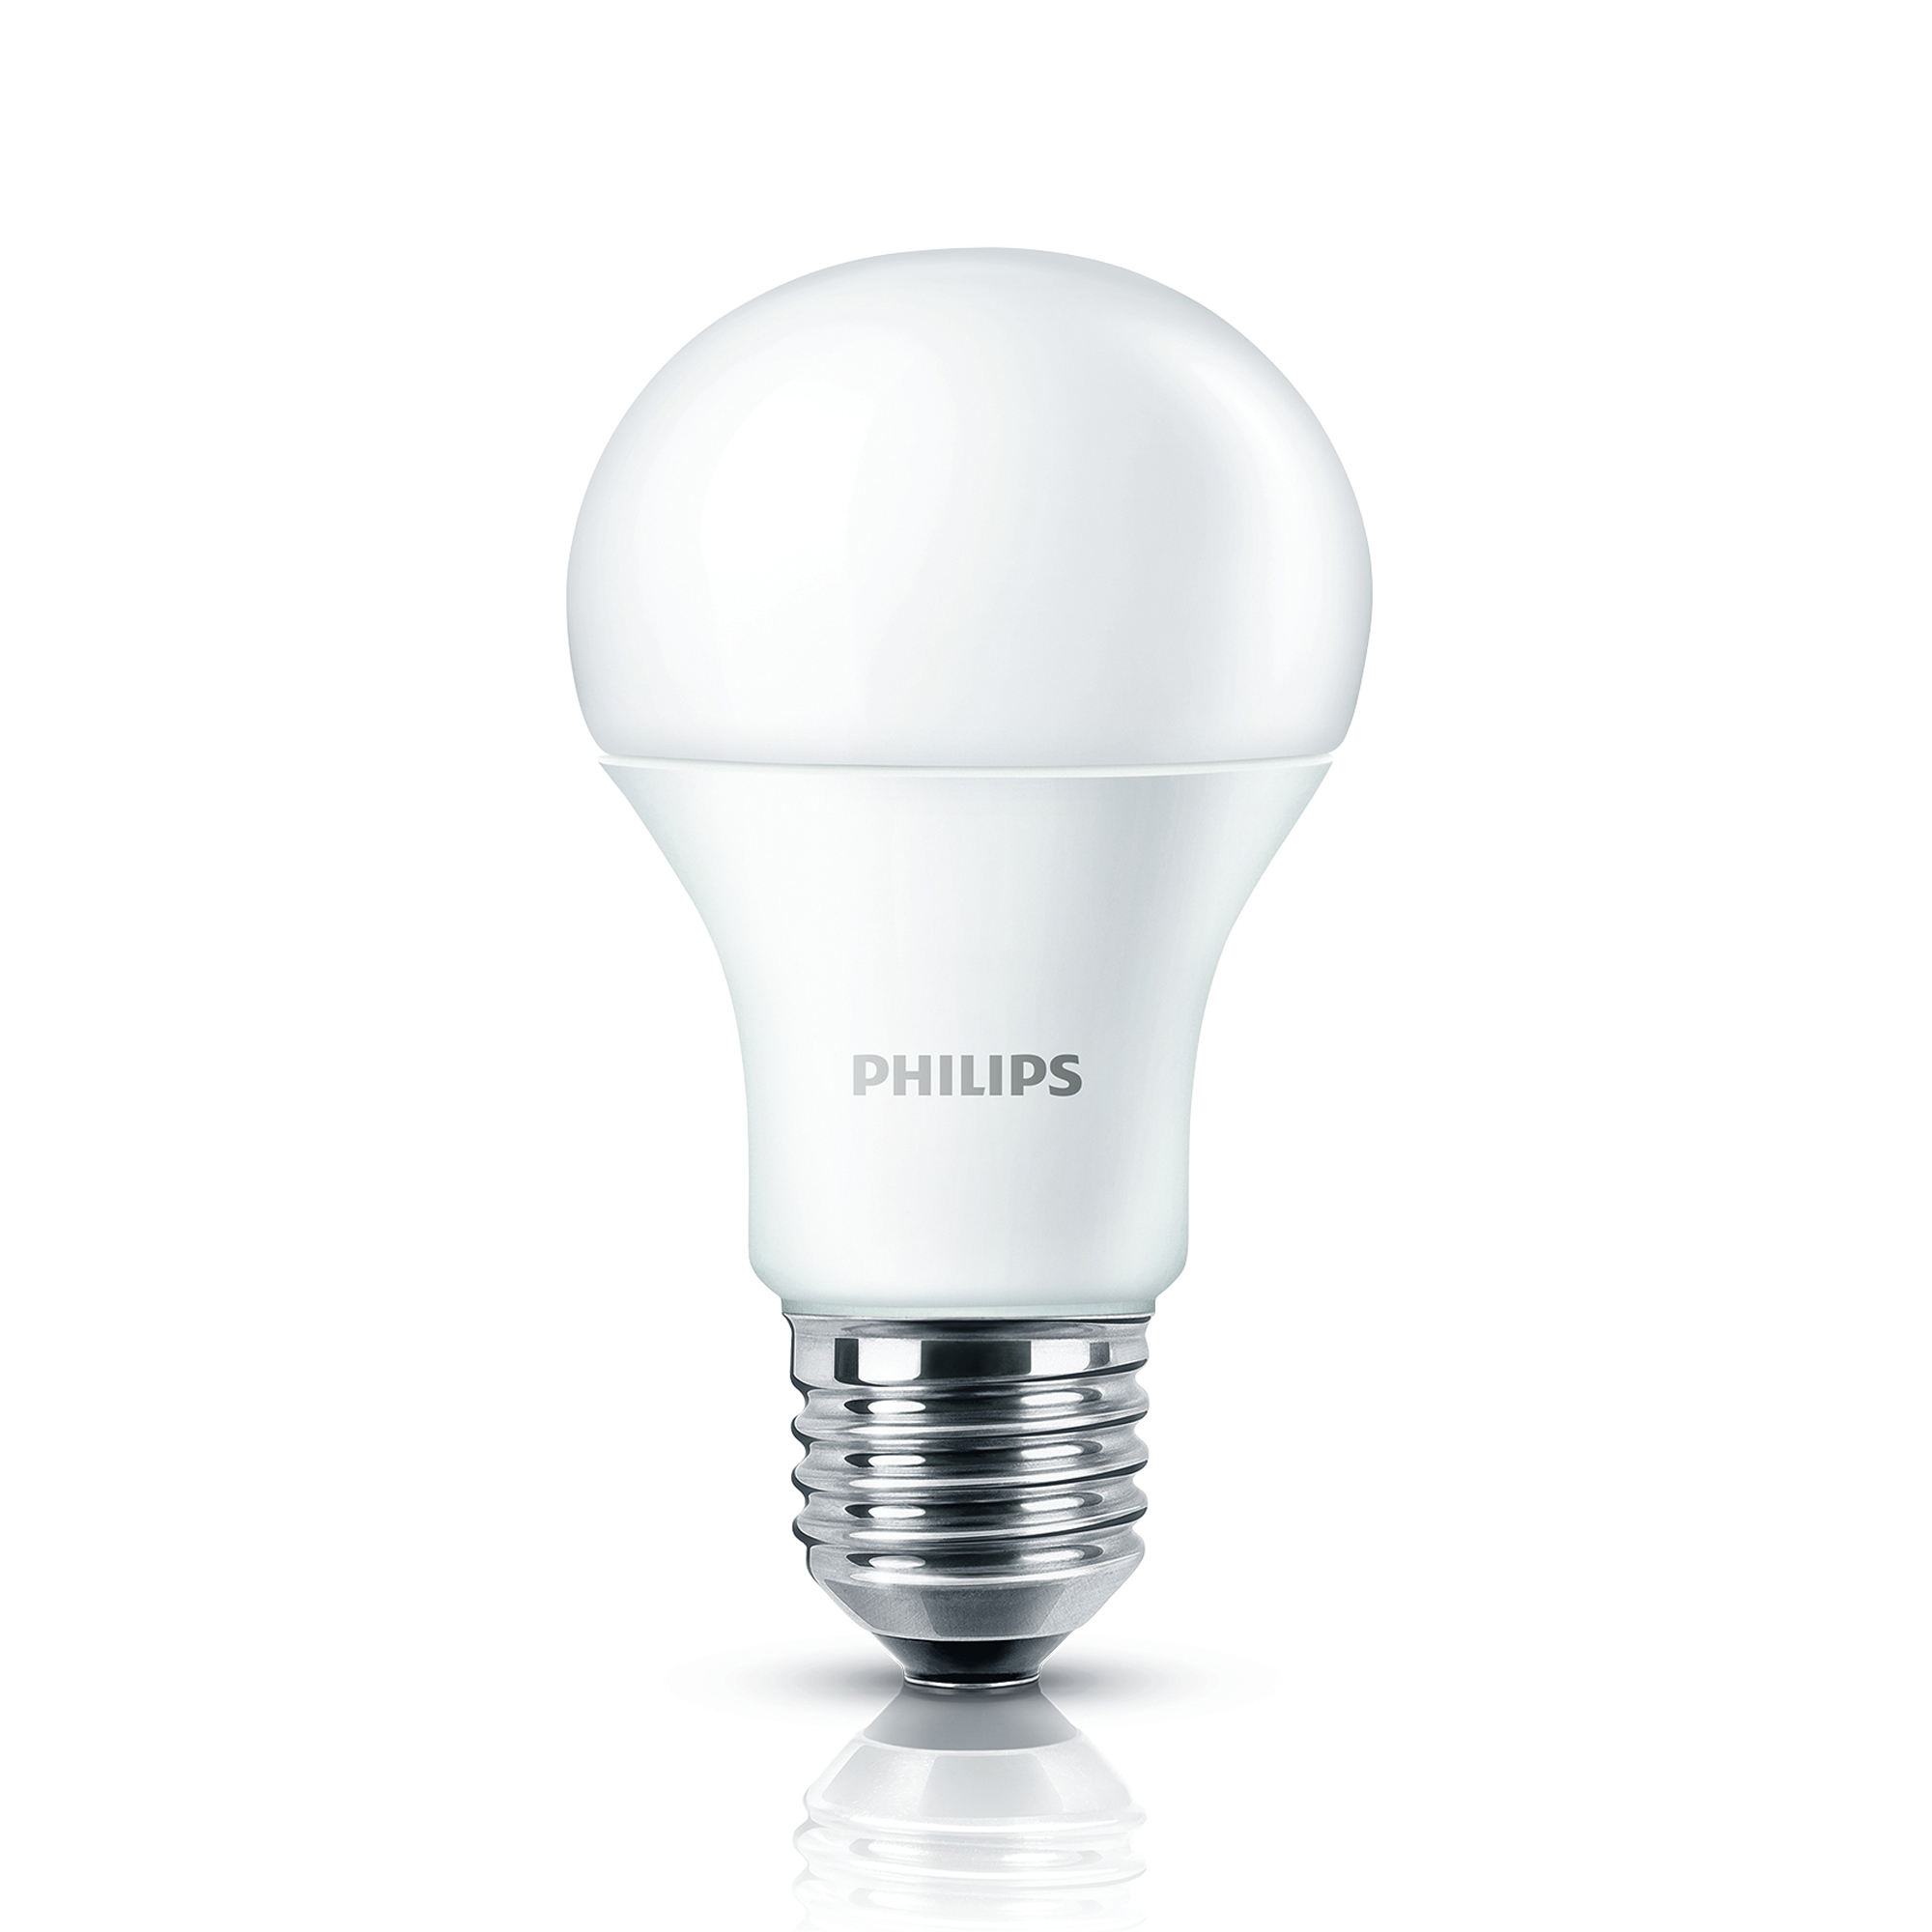 Philips CorePro LEDbulb 12,5-100W A60 E27 840 diffuse 4000K 1521lm